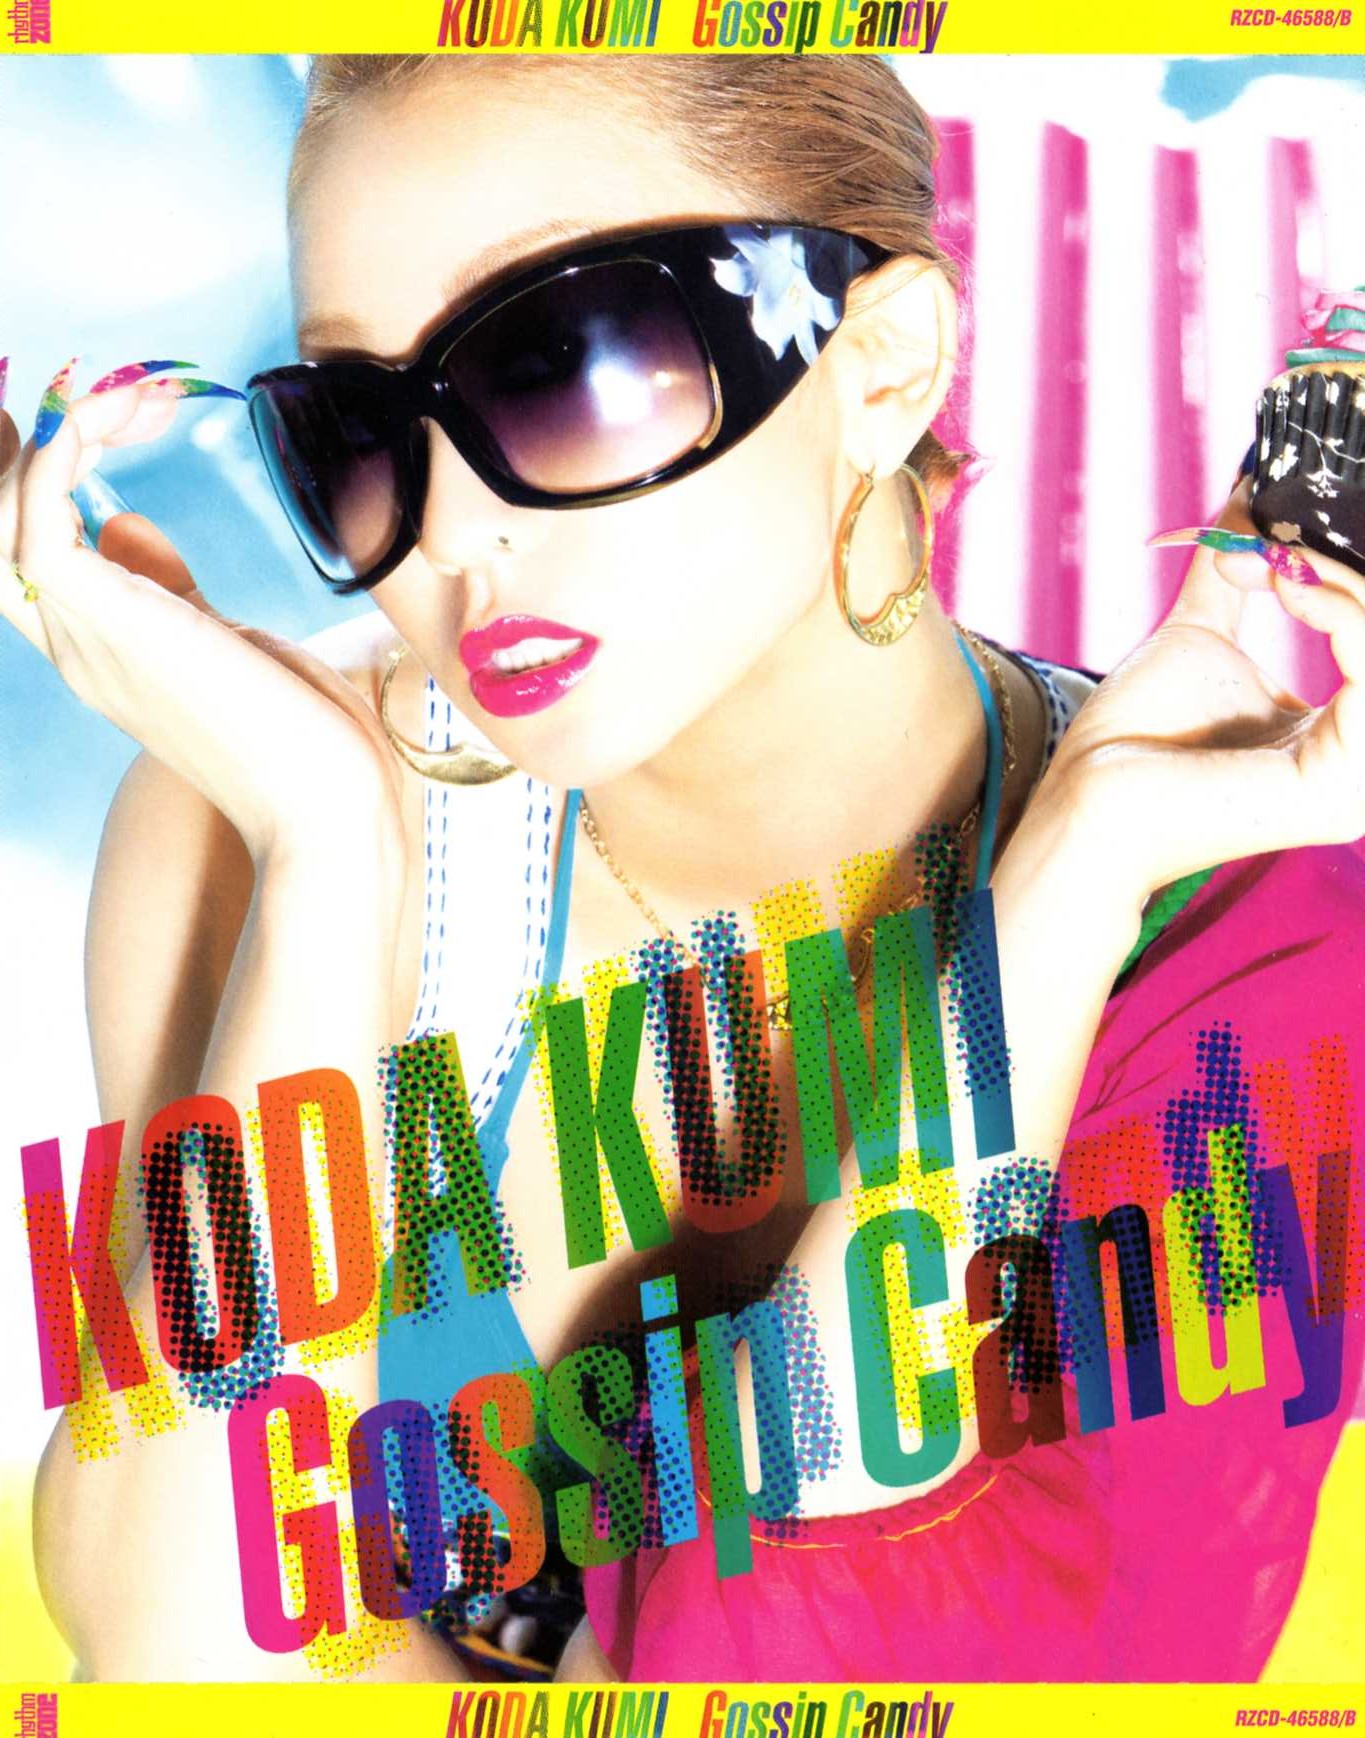 Gossip Candy (CD+DVD)